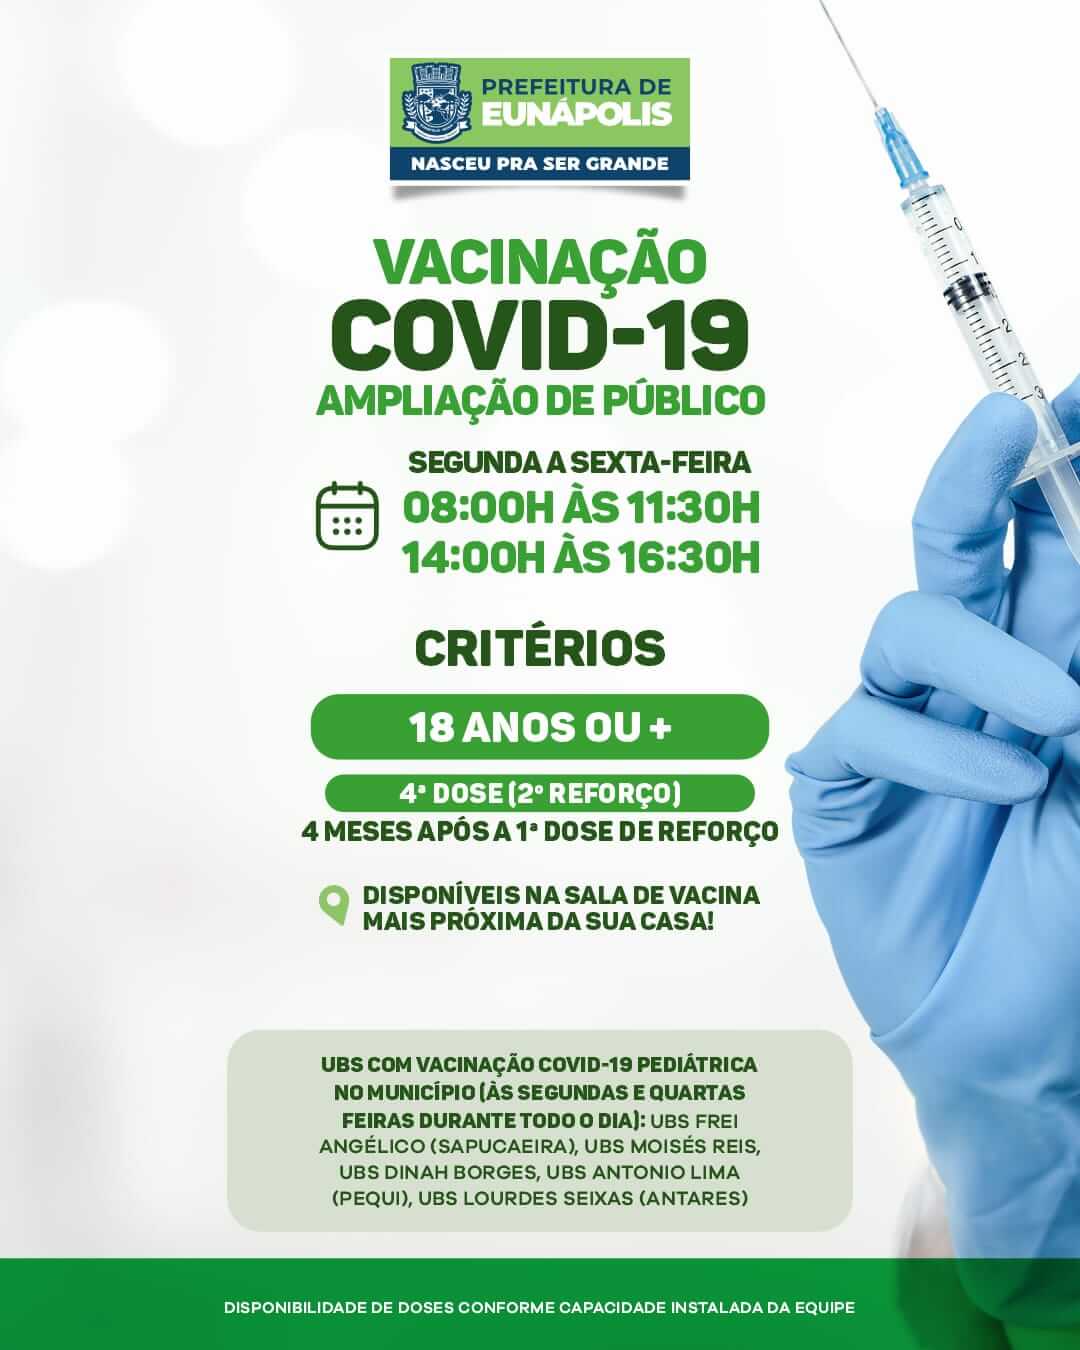 Prefeitura solicita que eunapolitanos atualizem a caderneta de vacinação 8